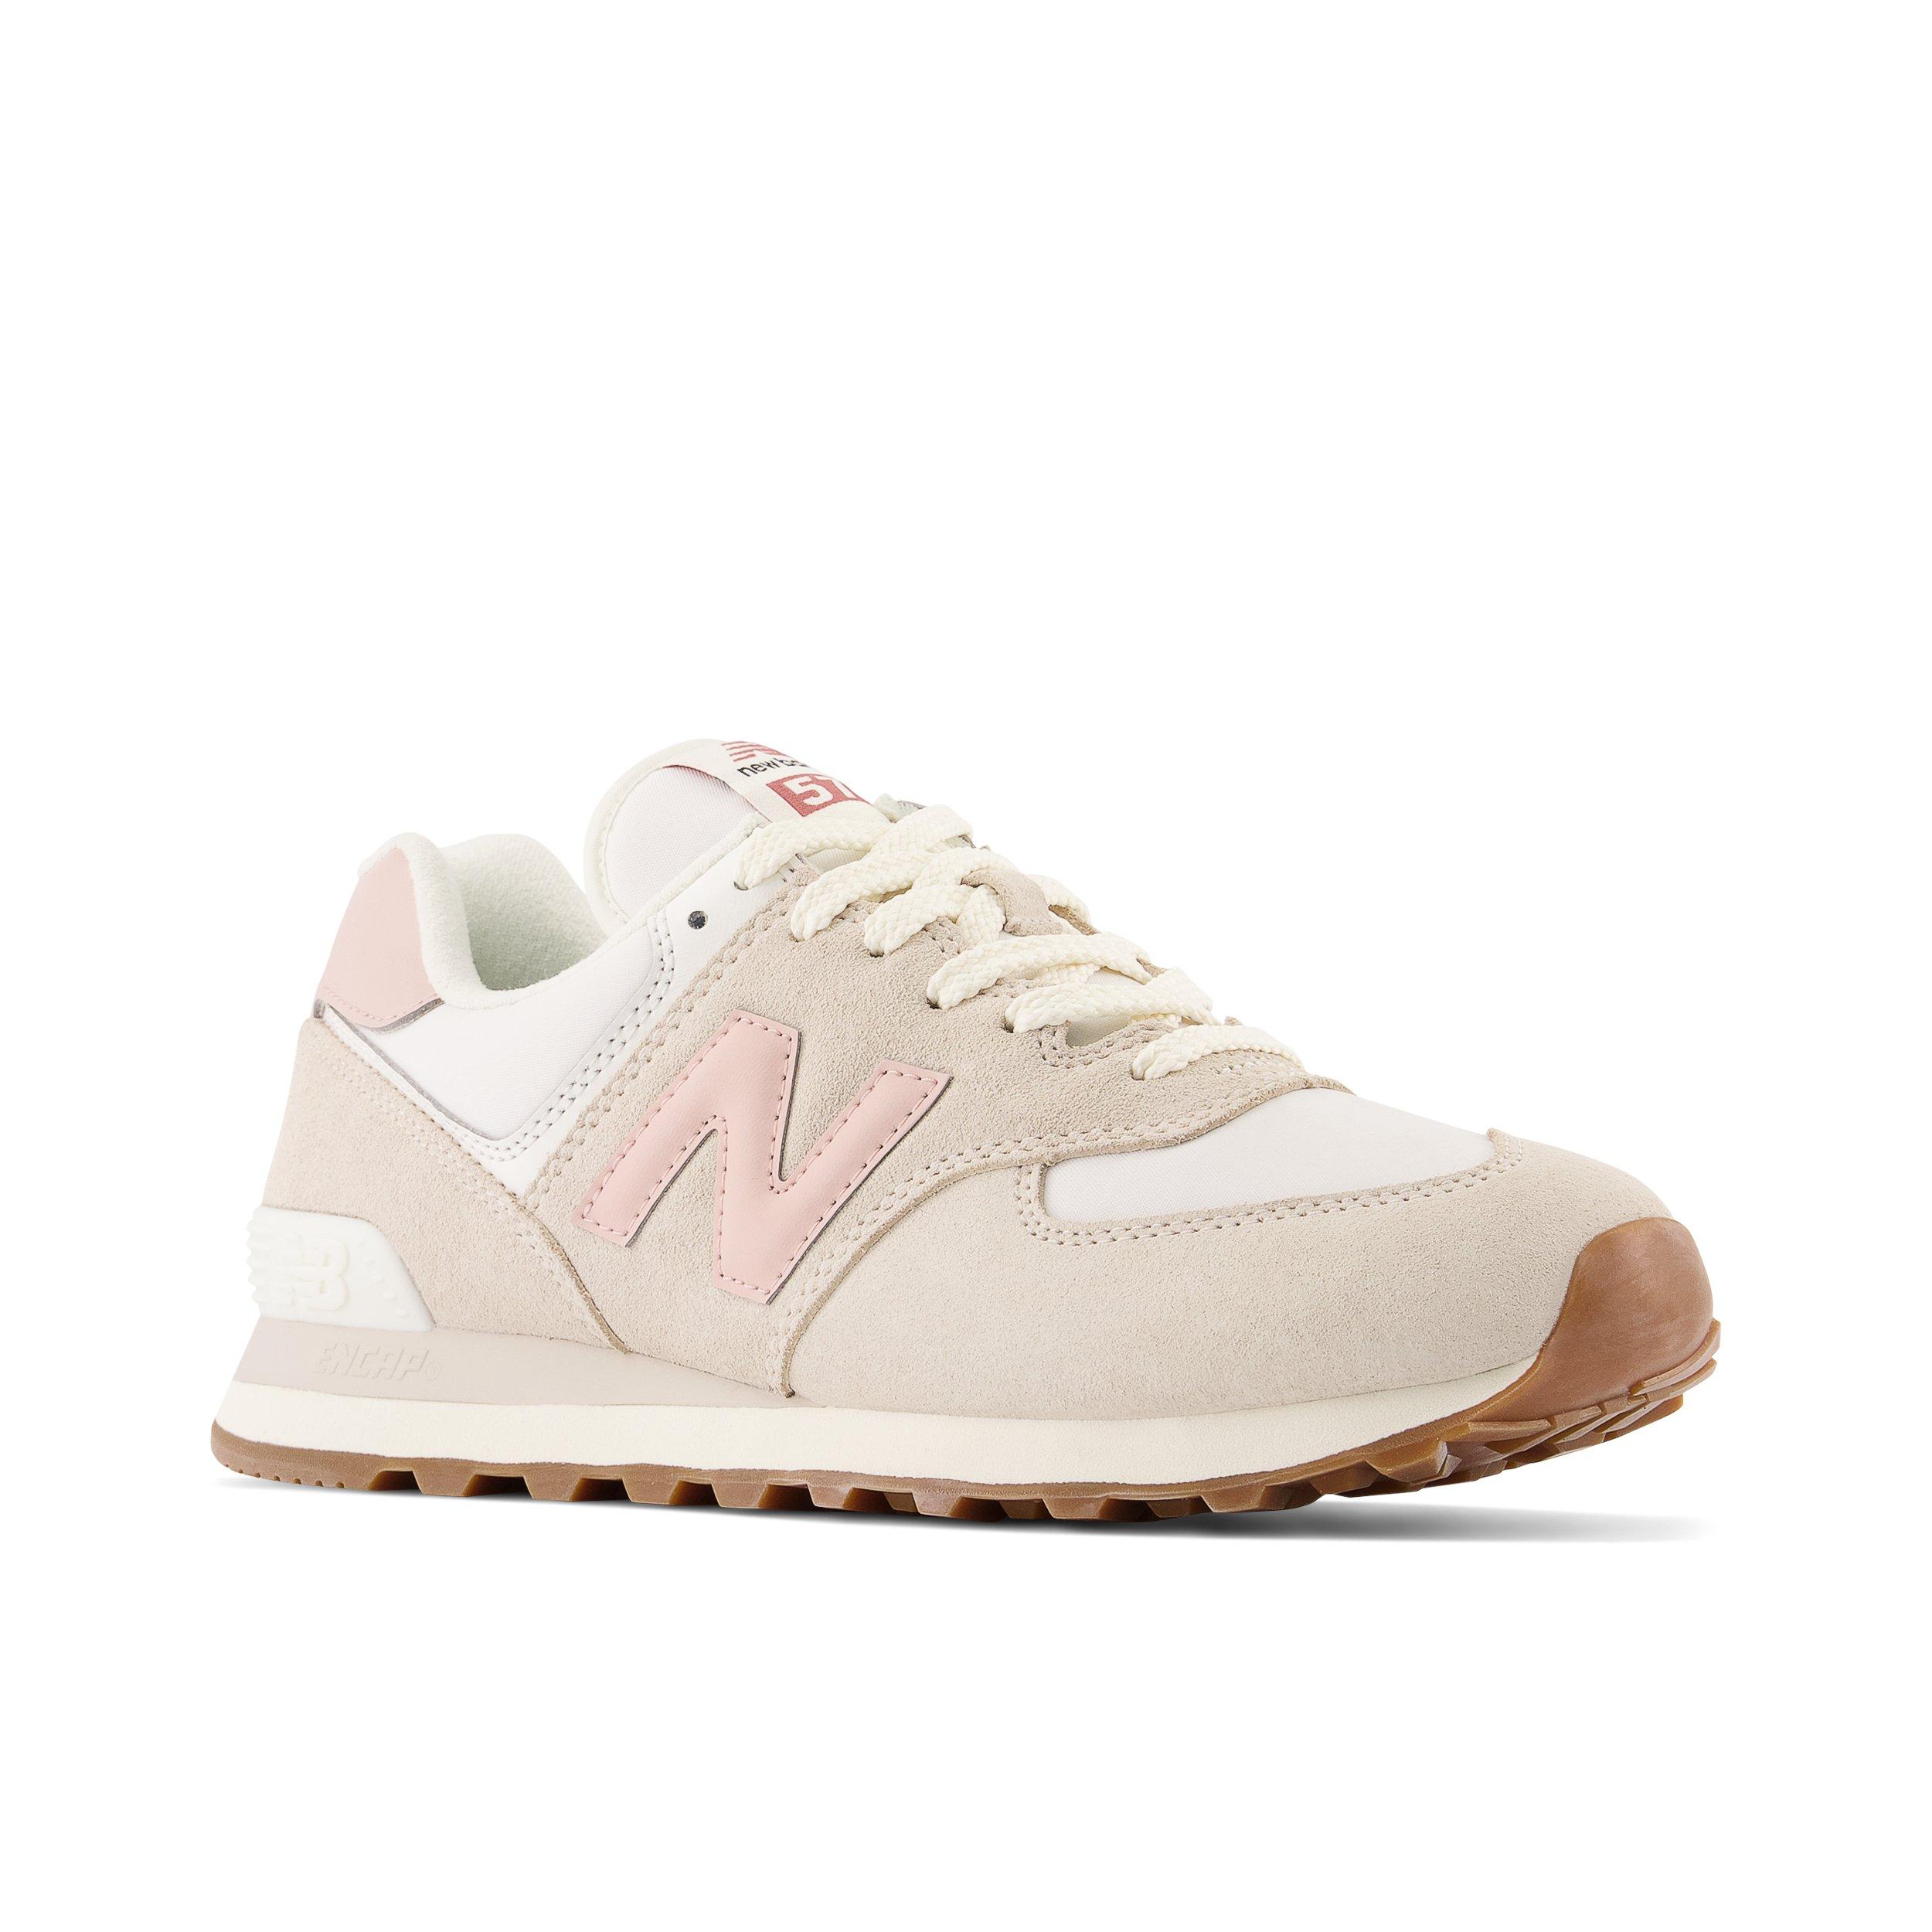 New 574 "White/Pink" Unisex Shoe